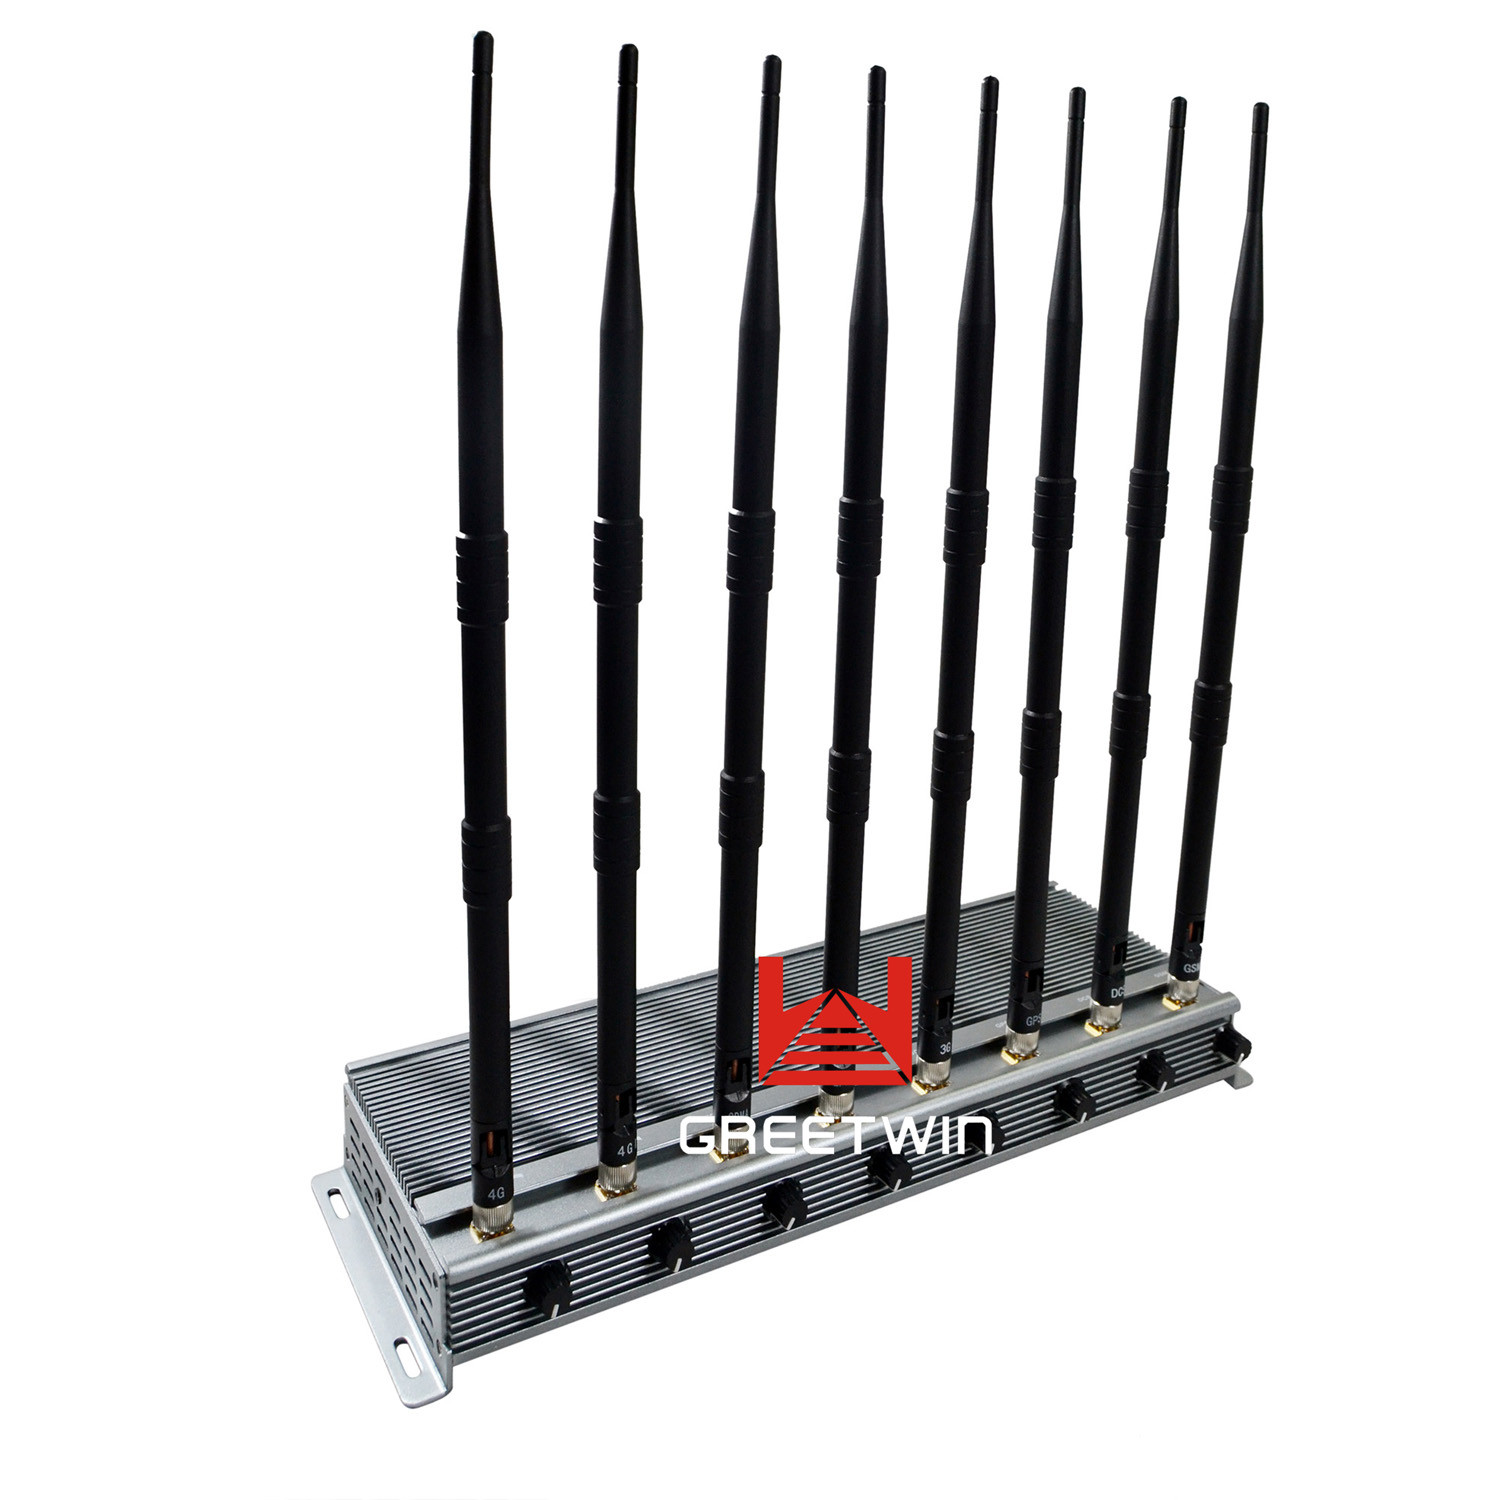 Poderoso bloqueador de sinal de celular WIFI 8 antenas interior ajustável 46W potência de saída